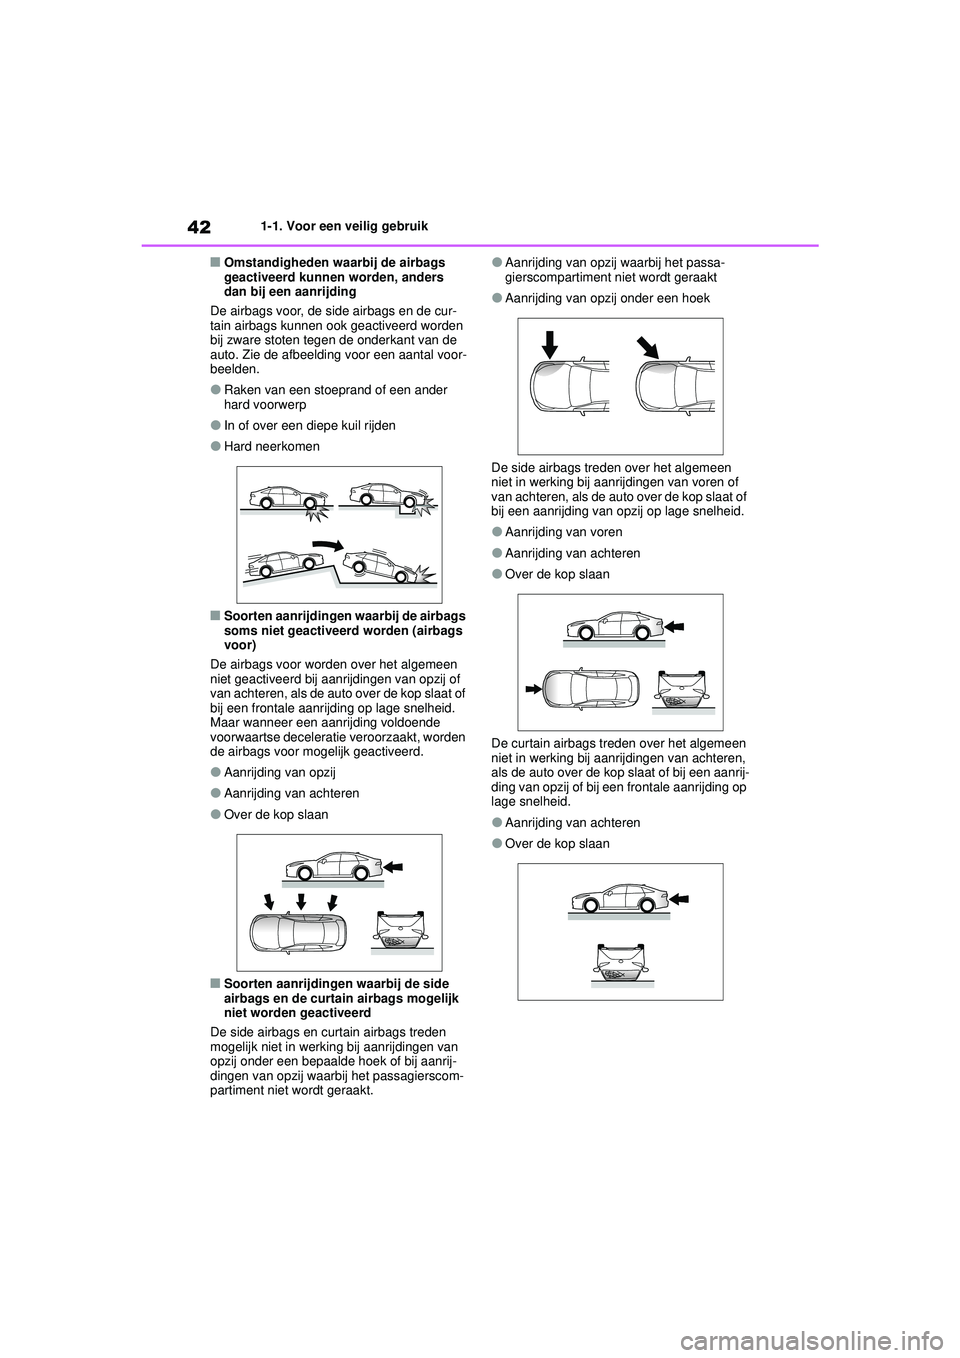 TOYOTA MIRAI 2022  Instructieboekje (in Dutch) 42
Handleiding_Europa_M62060_nl
1-1. Voor een veilig gebruik
■Omstandigheden waarbij de airbags 
geactiveerd kunnen worden, anders 
dan bij een aanrijding
De airbags voor, de side airbags en de cur-